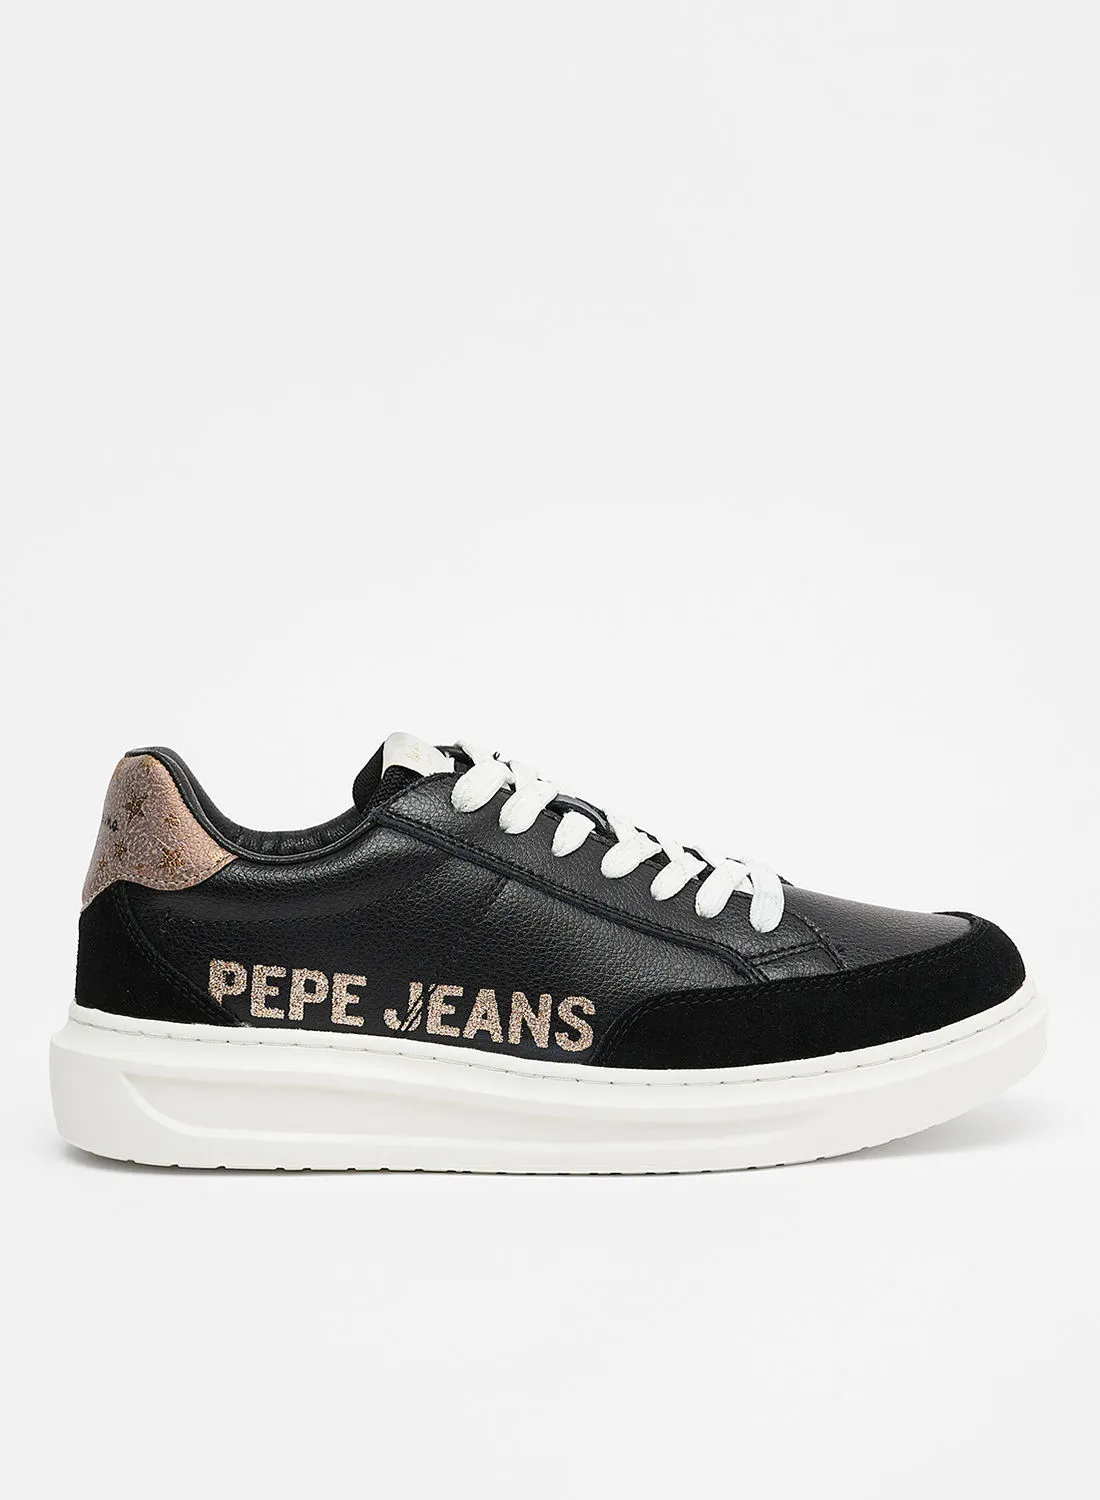 Pepe Jeans حذاء آبي ويلي من لندن باللون الأسود